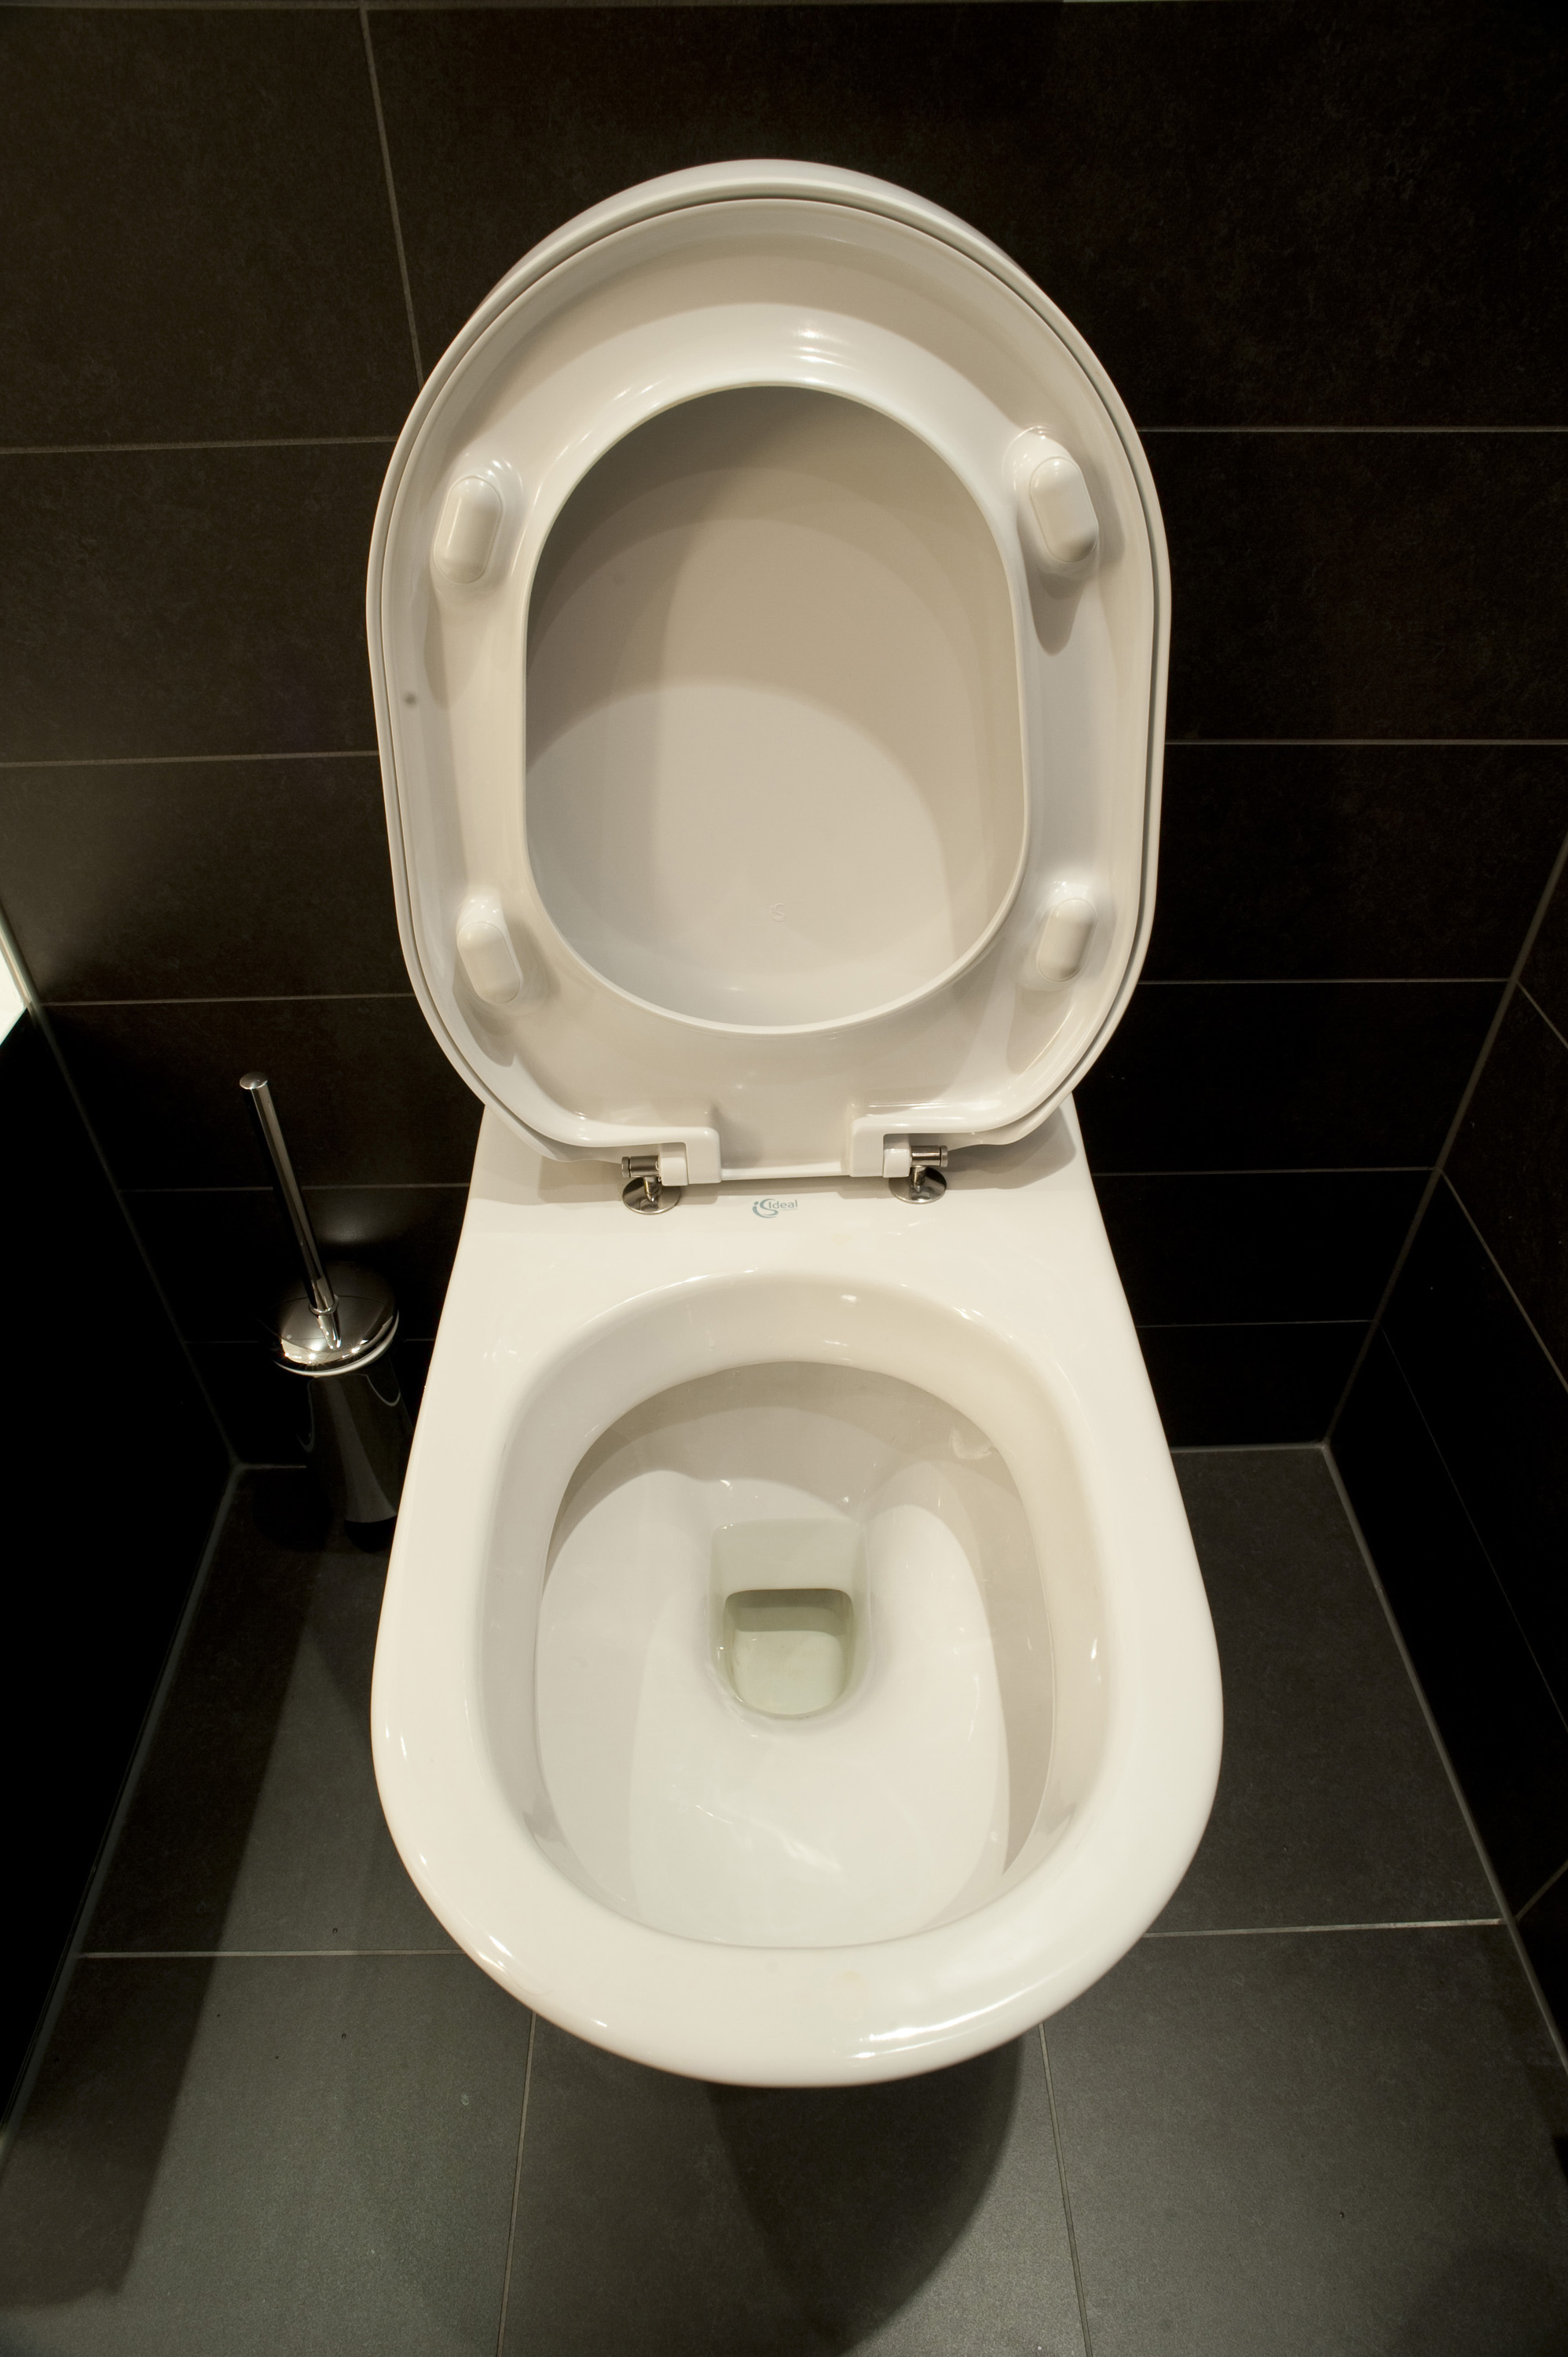 Free Image Of White Toilet